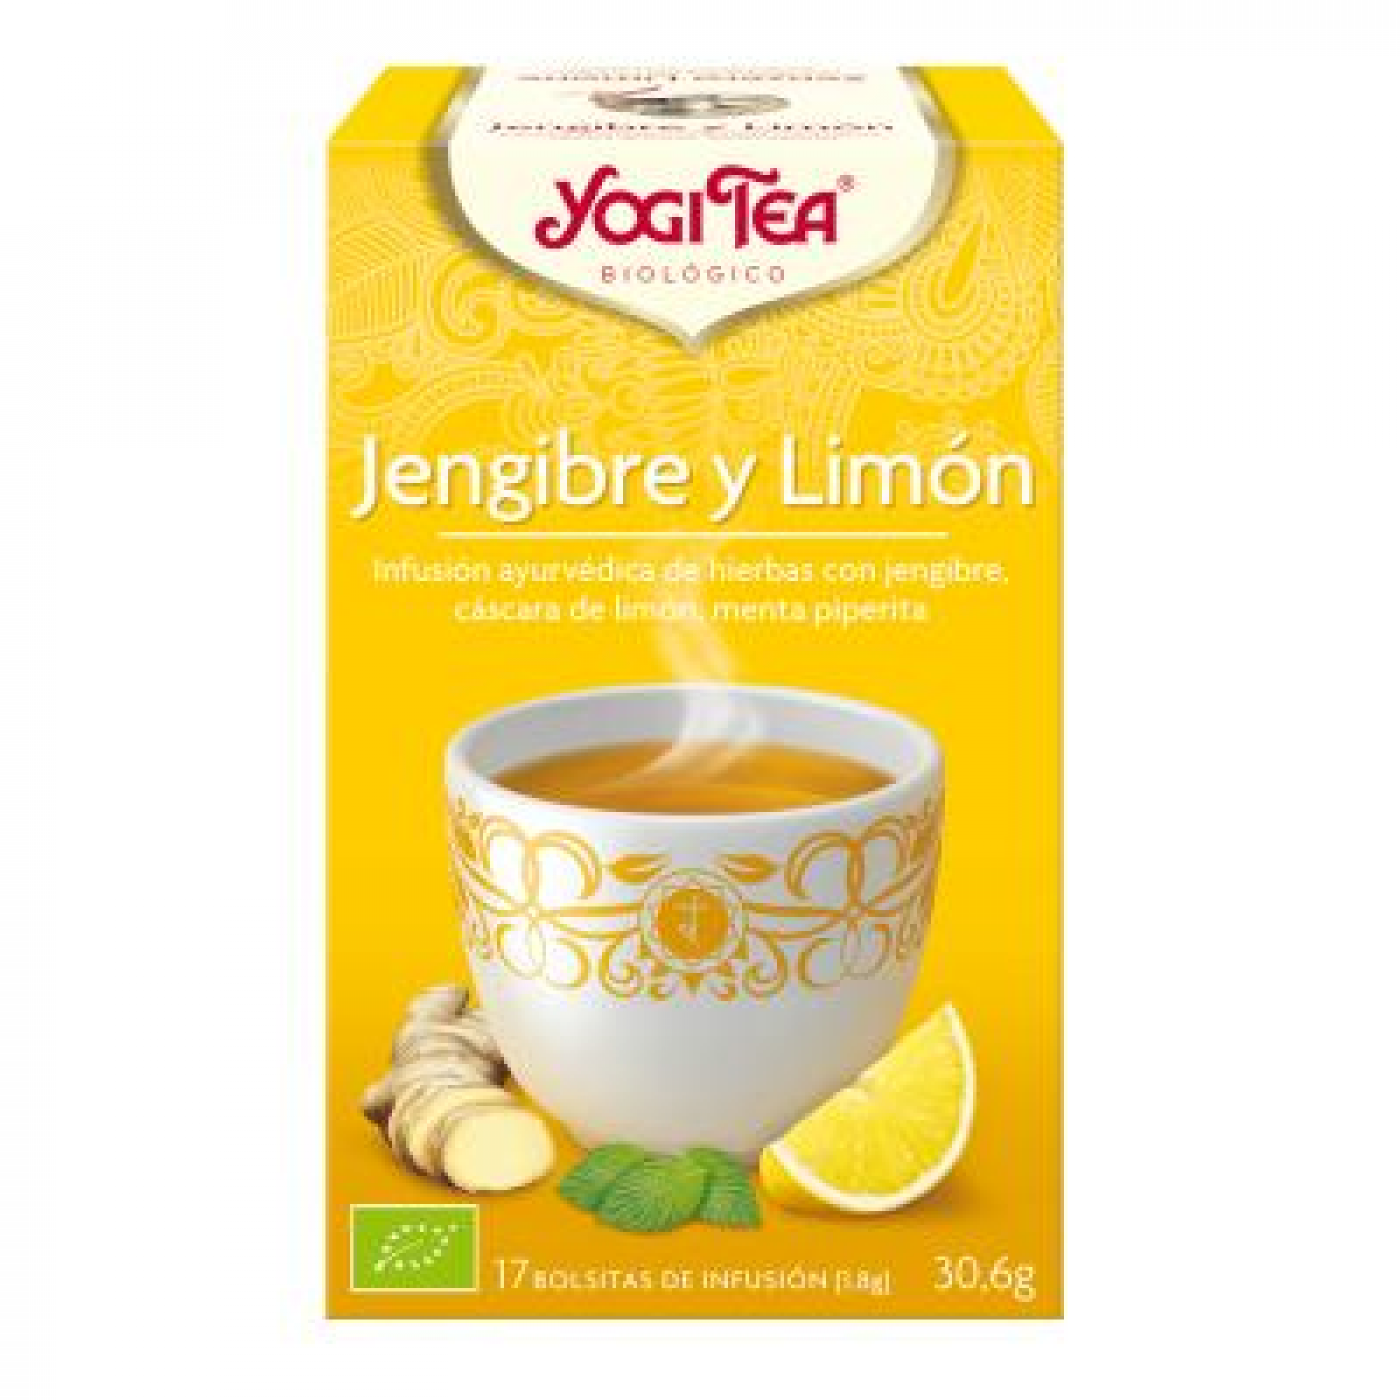 Chá de Yogi Gengibre & Limão, 17 sachês